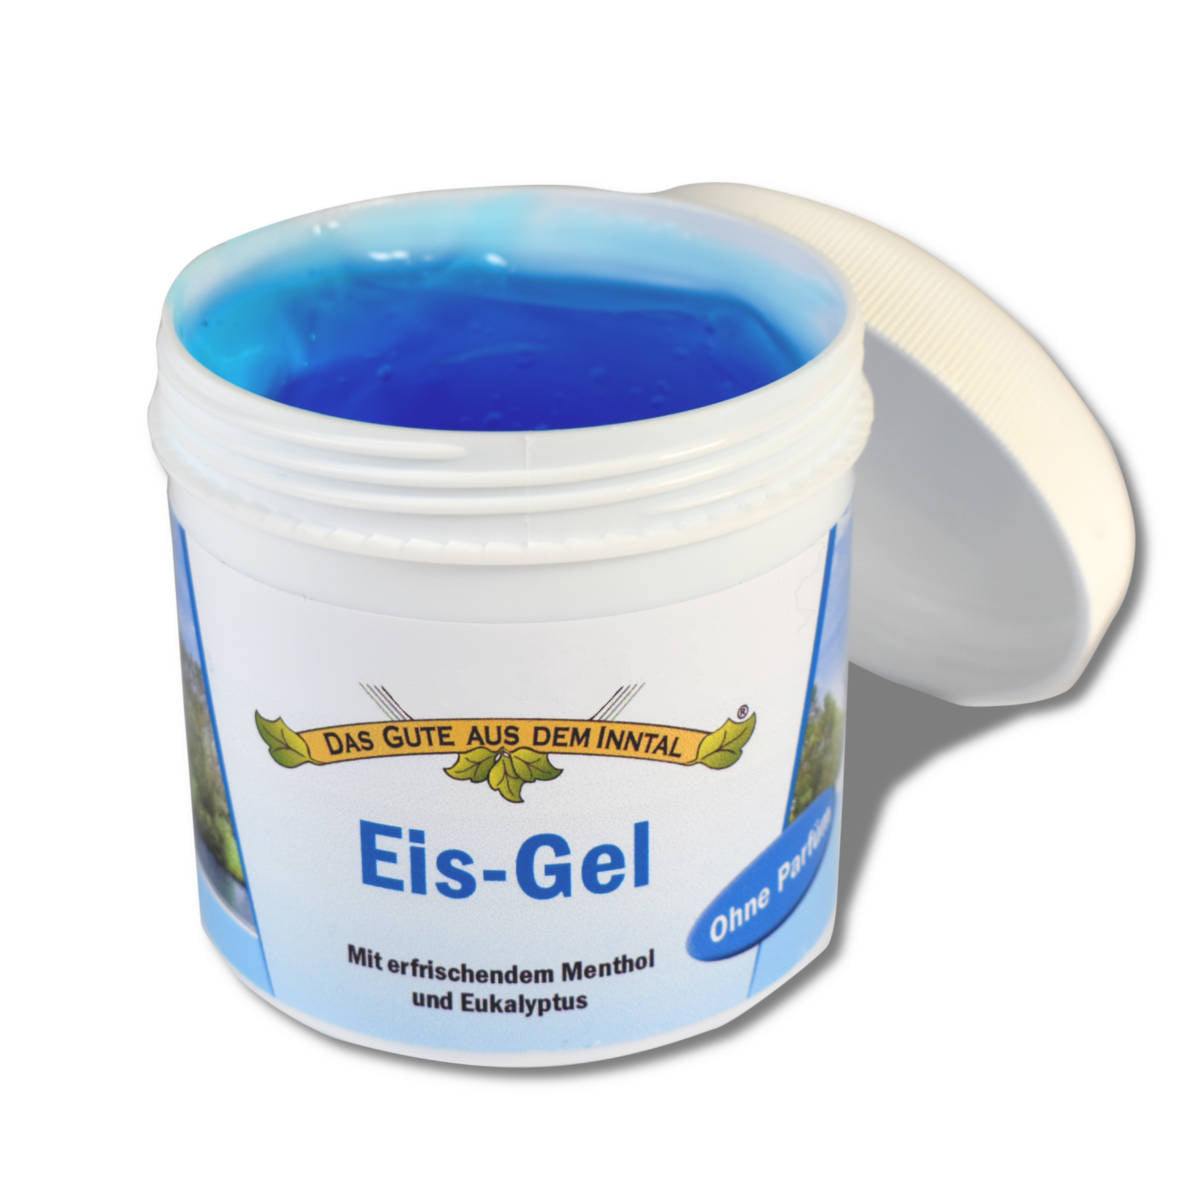 Eis-Gel 200 ml mit erfrischendem Menthol und Eukalyptus für alle Hauttypen geeignet - Handarbeit aus Deutschland